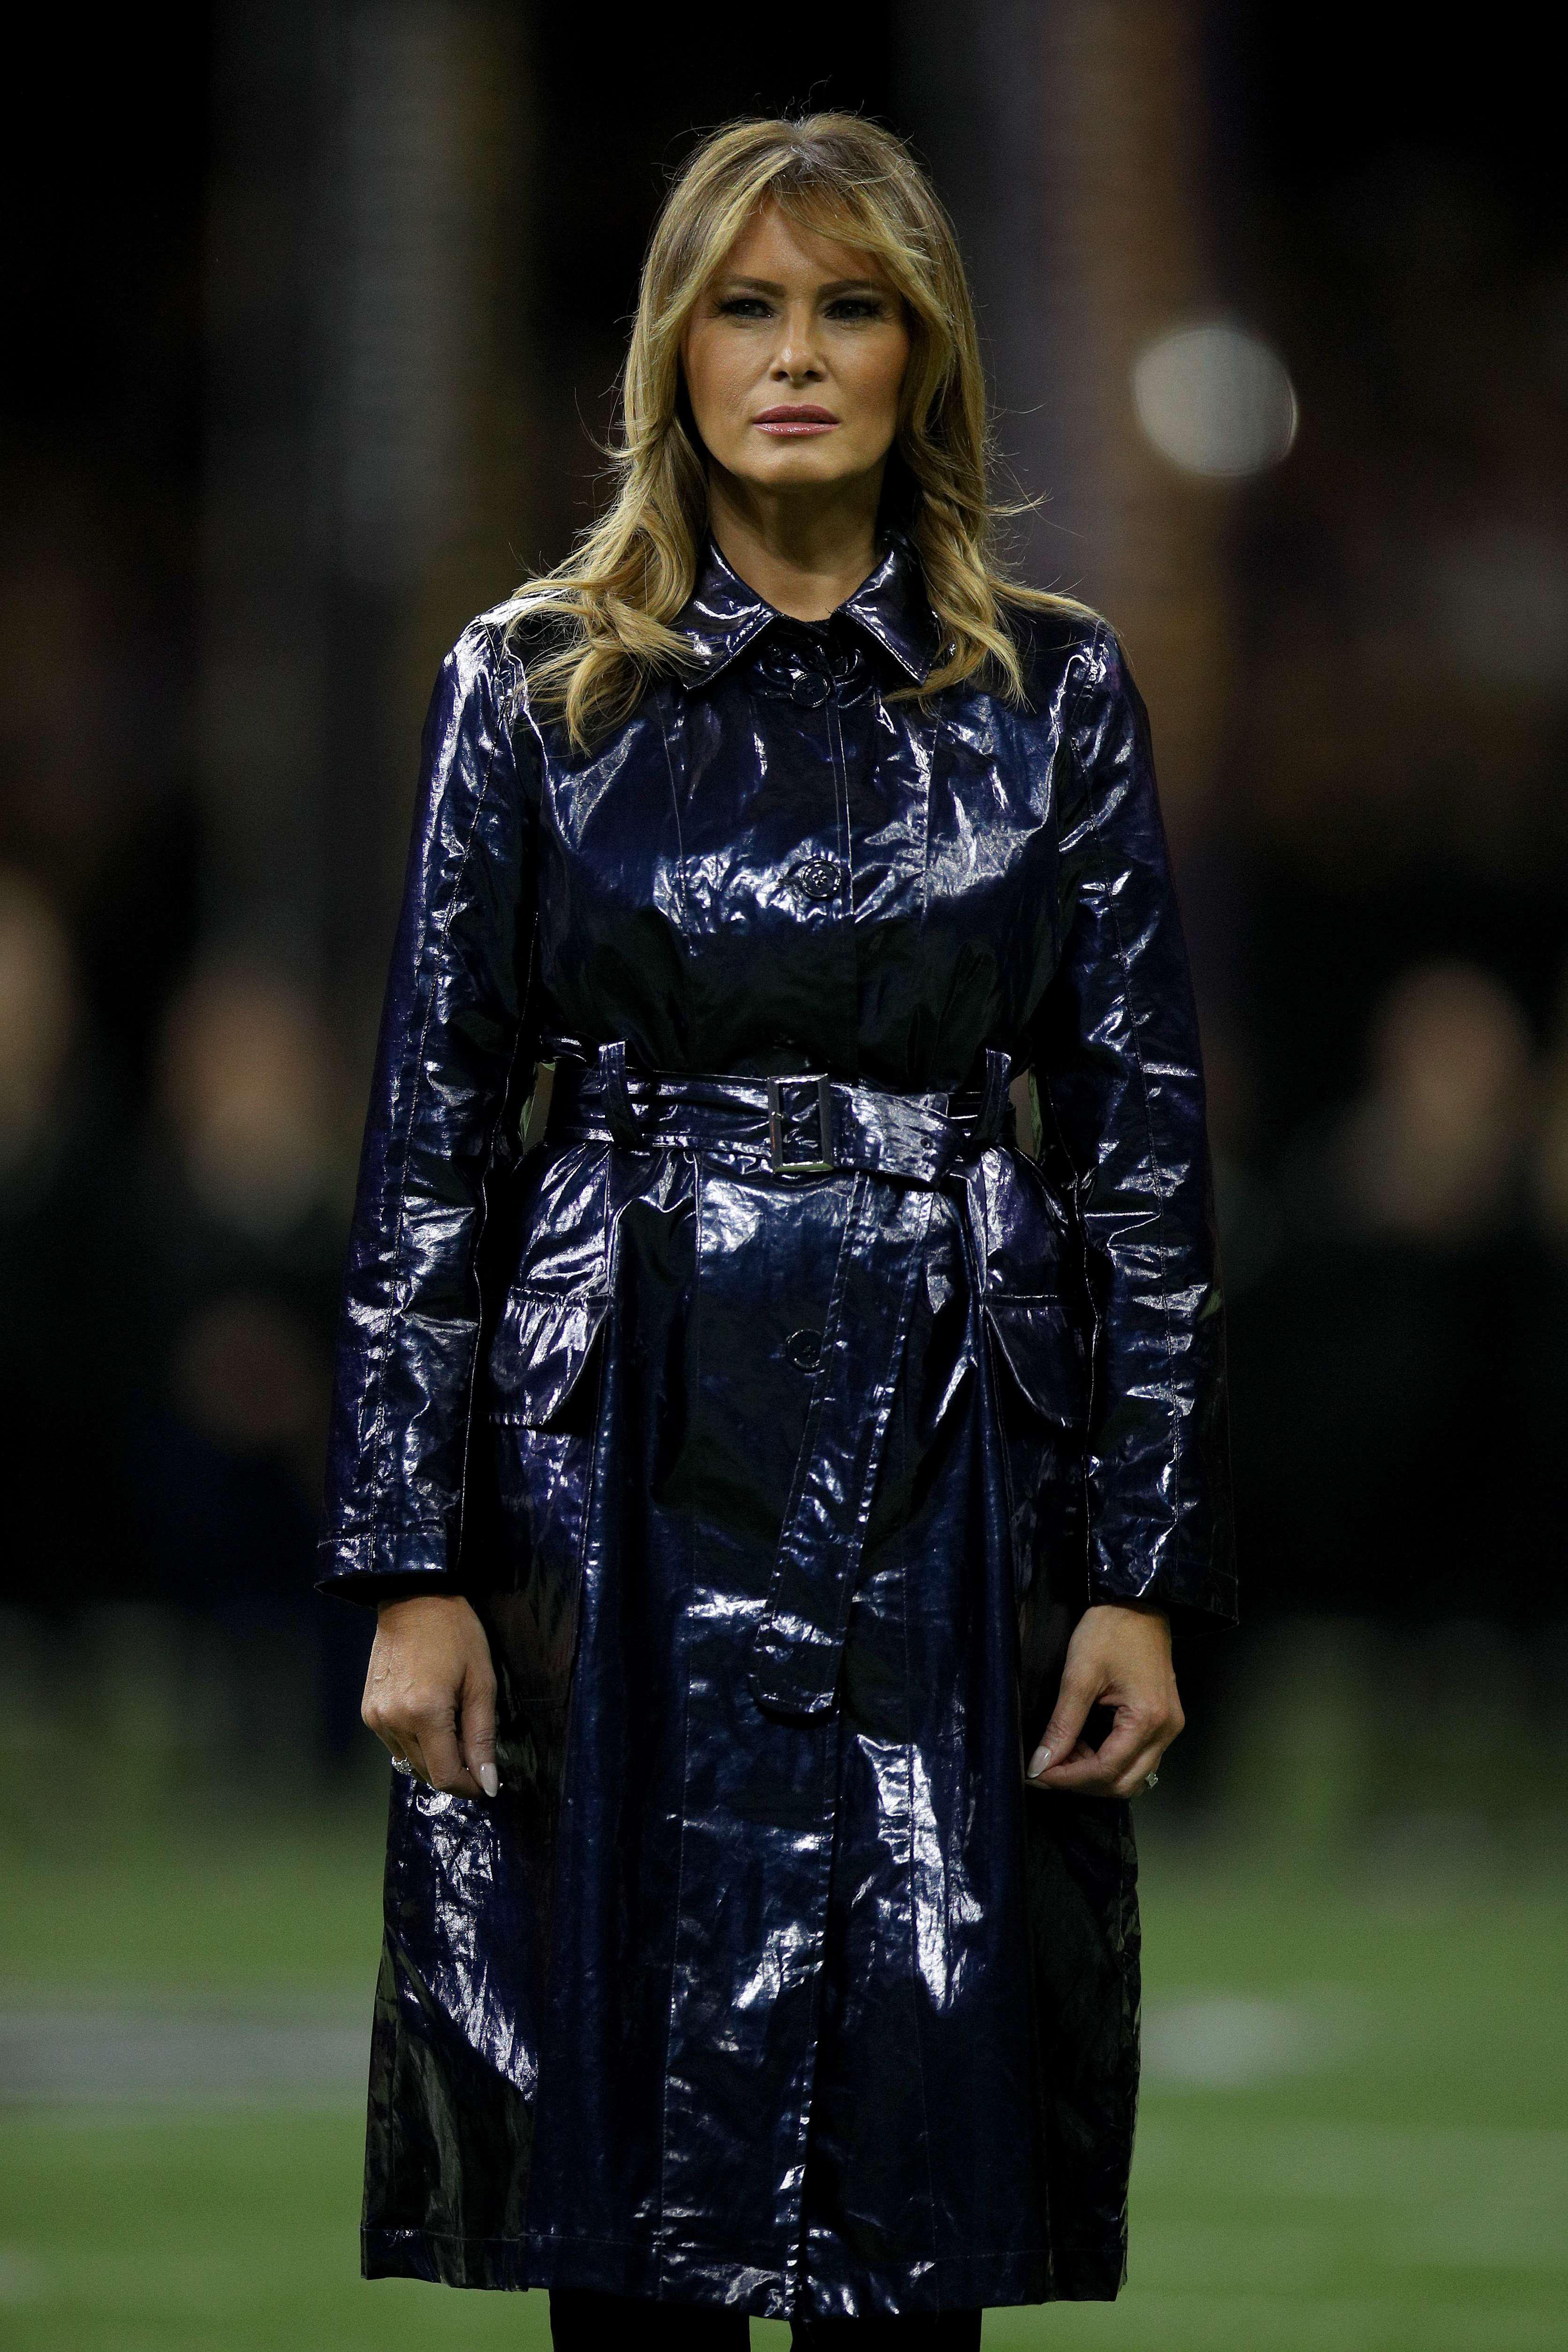 Melania Trumpın ceketi sosyal medyayı karıştırdı